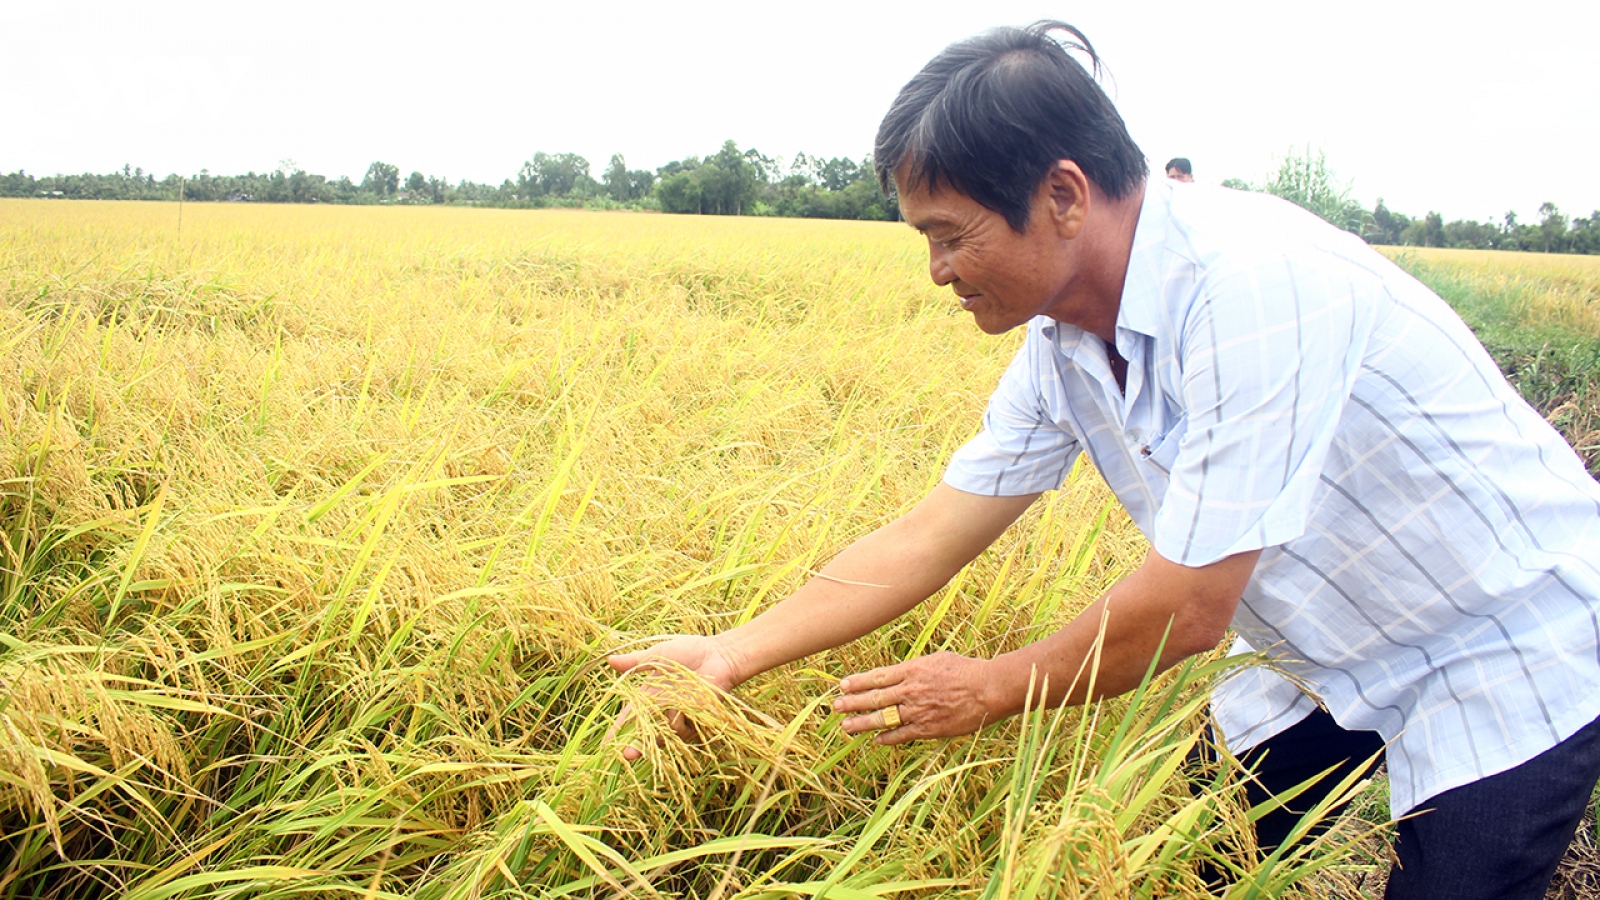 “Canh tác lúa thông minh ướt - khô xen kẽ” cho nông dân lợi nhuận cao